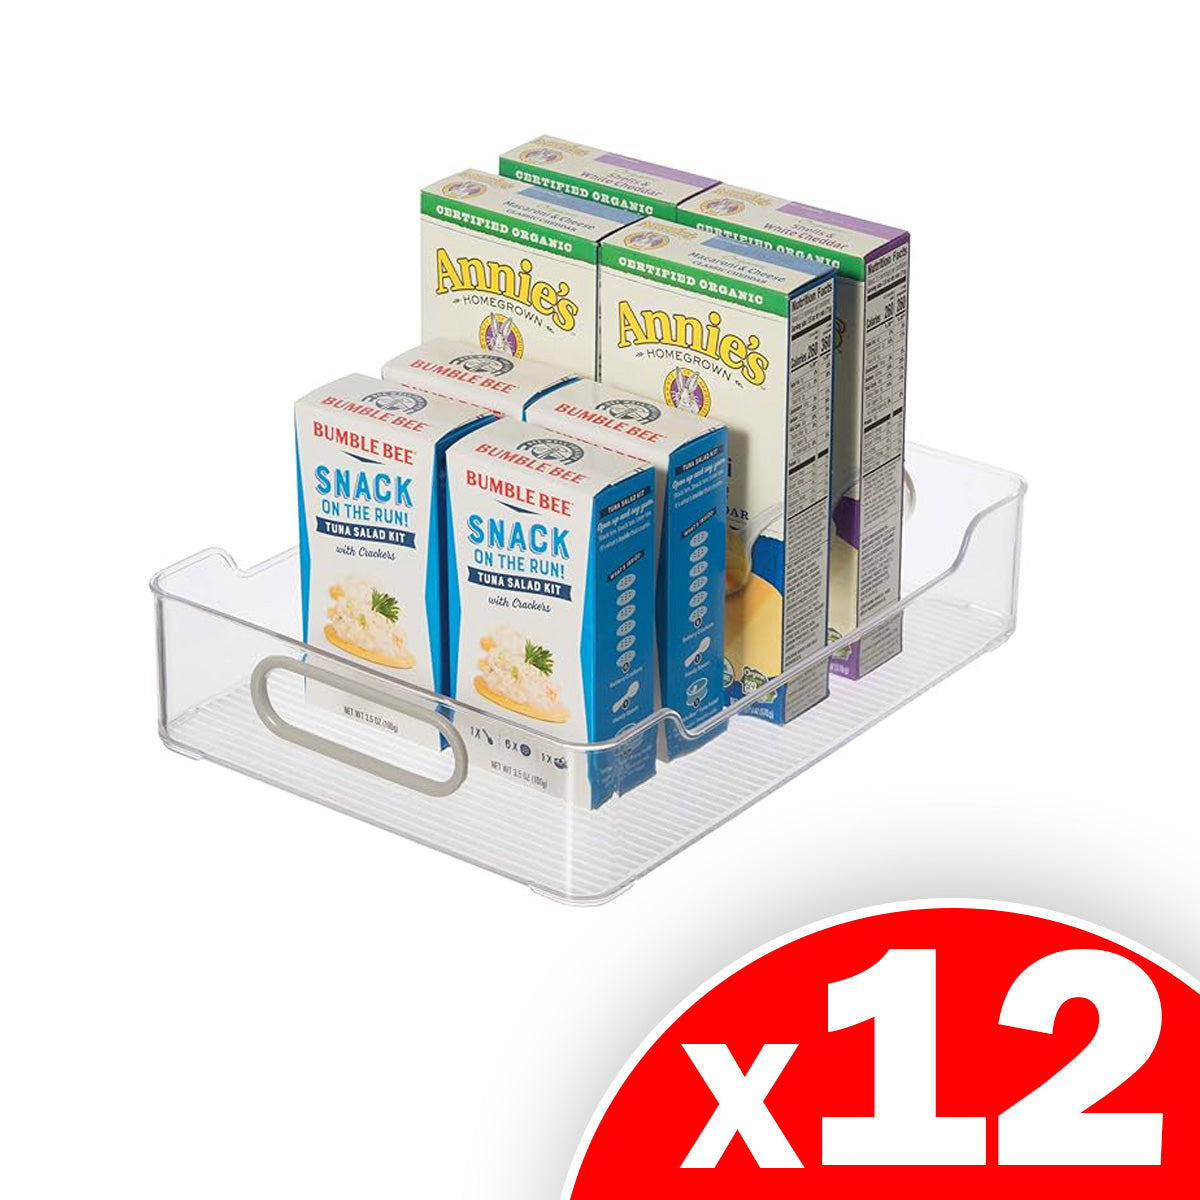 SharpChef Cabinet / Drawer Storage Bin (13.5" x 9.75" x 2.5"), 12 Pack